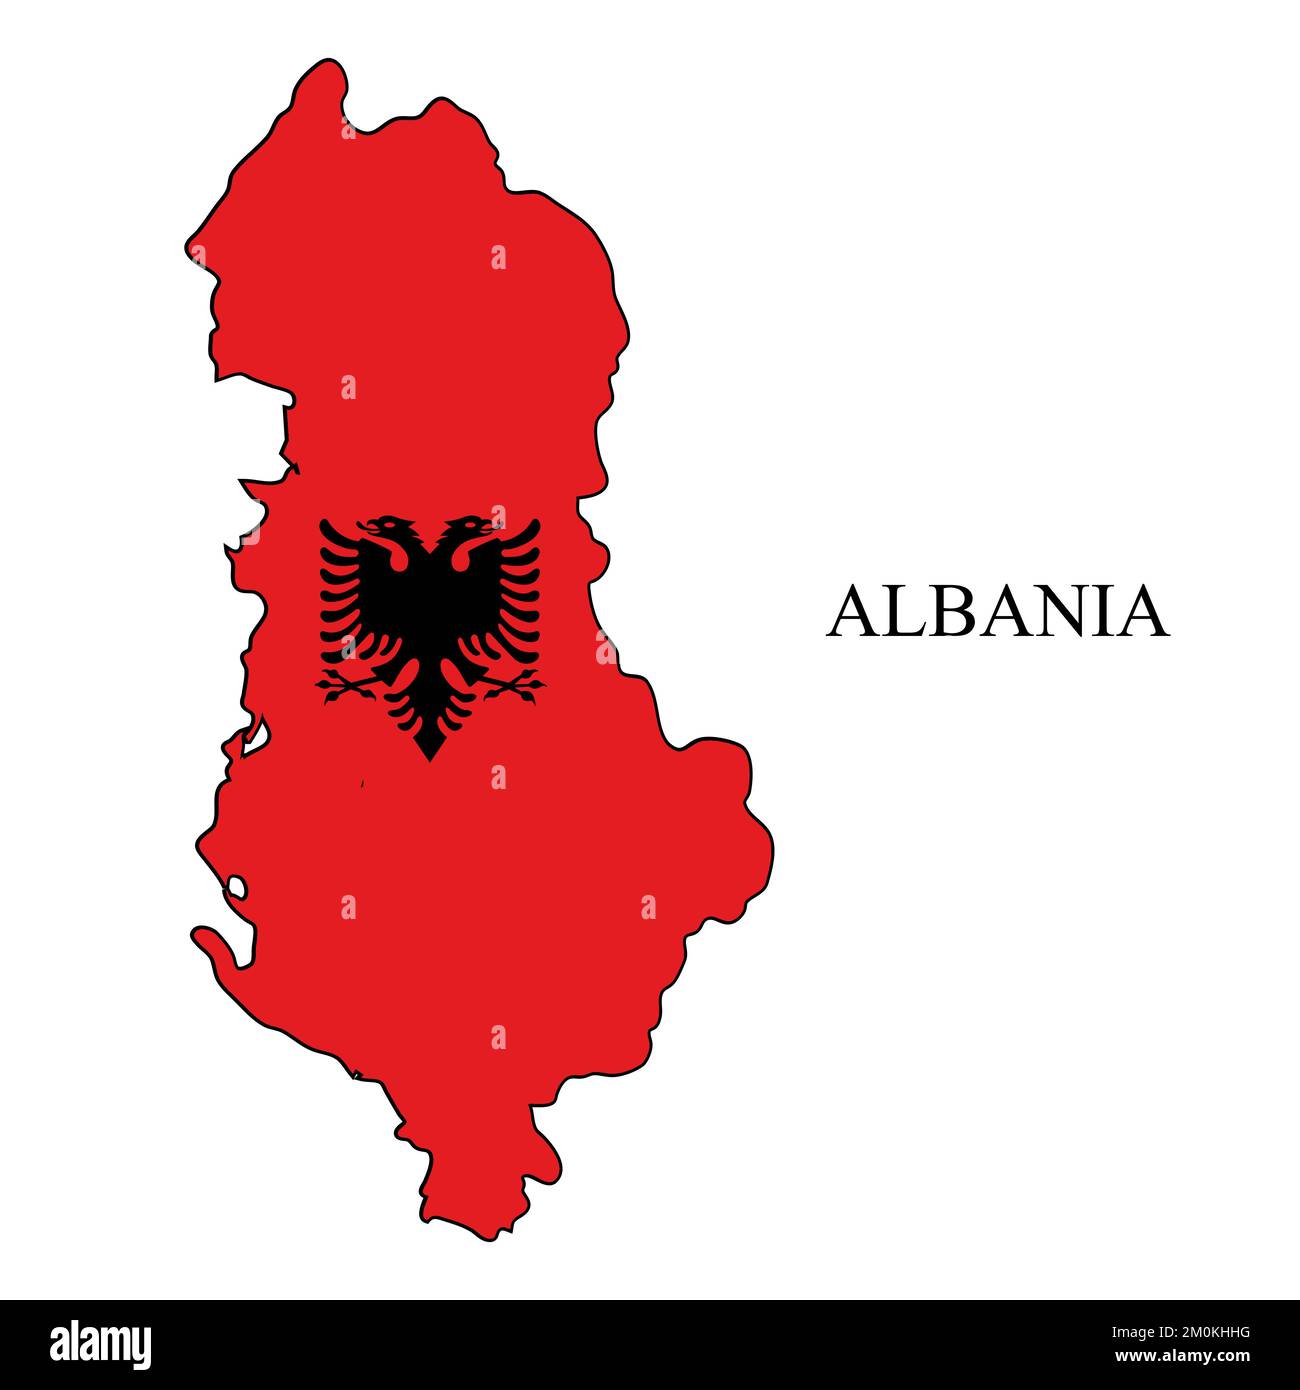 Illustration vectorielle de la carte de l'Albanie. Économie mondiale. Pays célèbre. Europe du Sud. Europe. Illustration de Vecteur